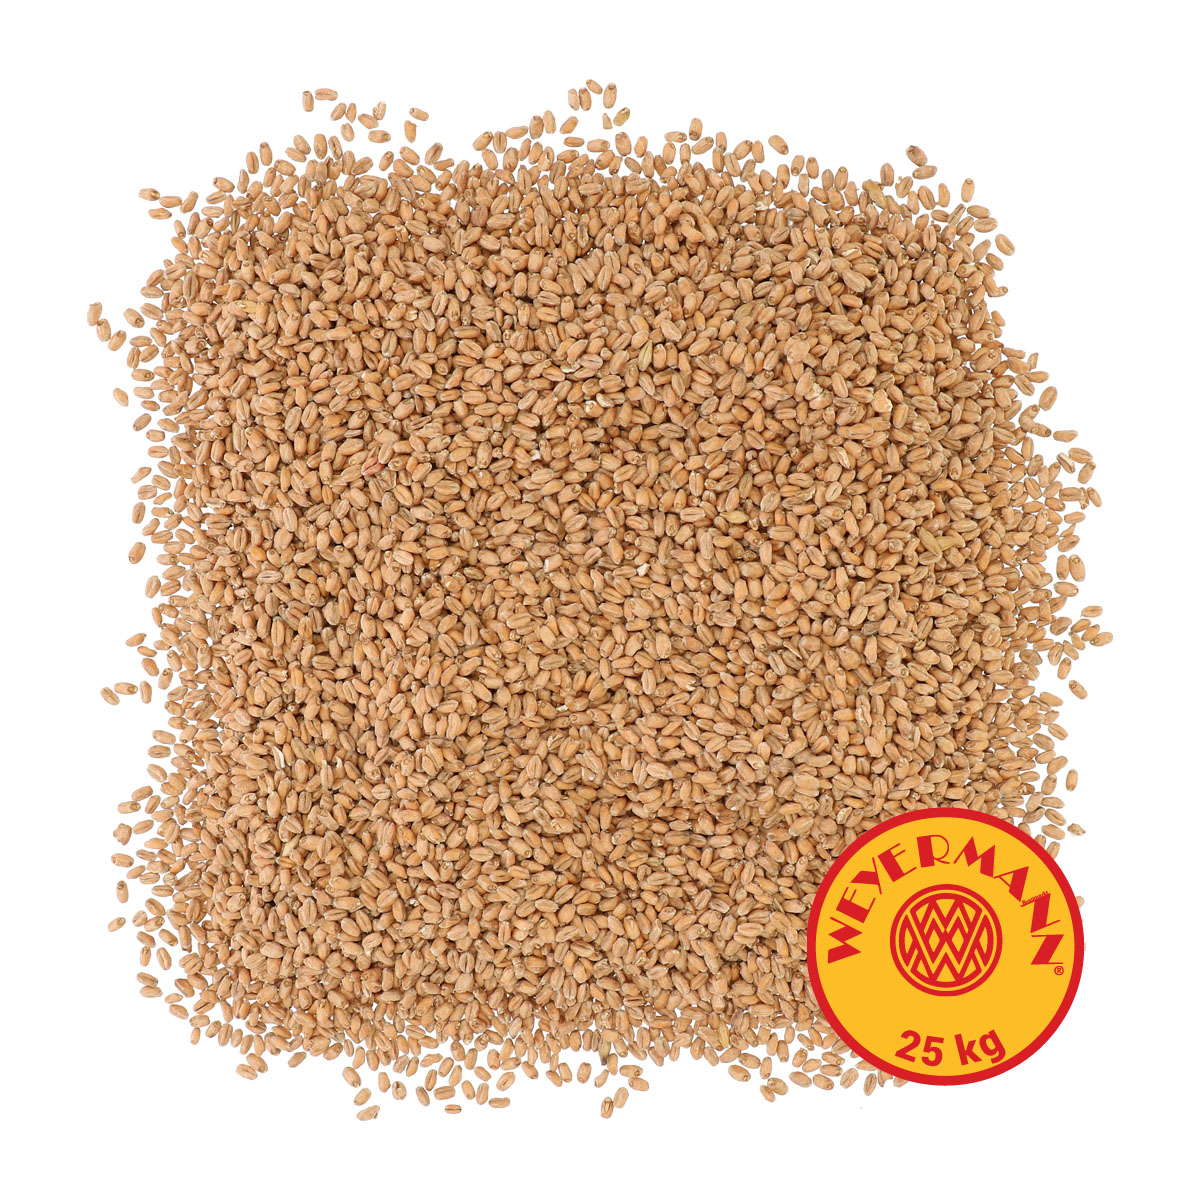 Weyermann® Oak Smoked Wheat 25 kg